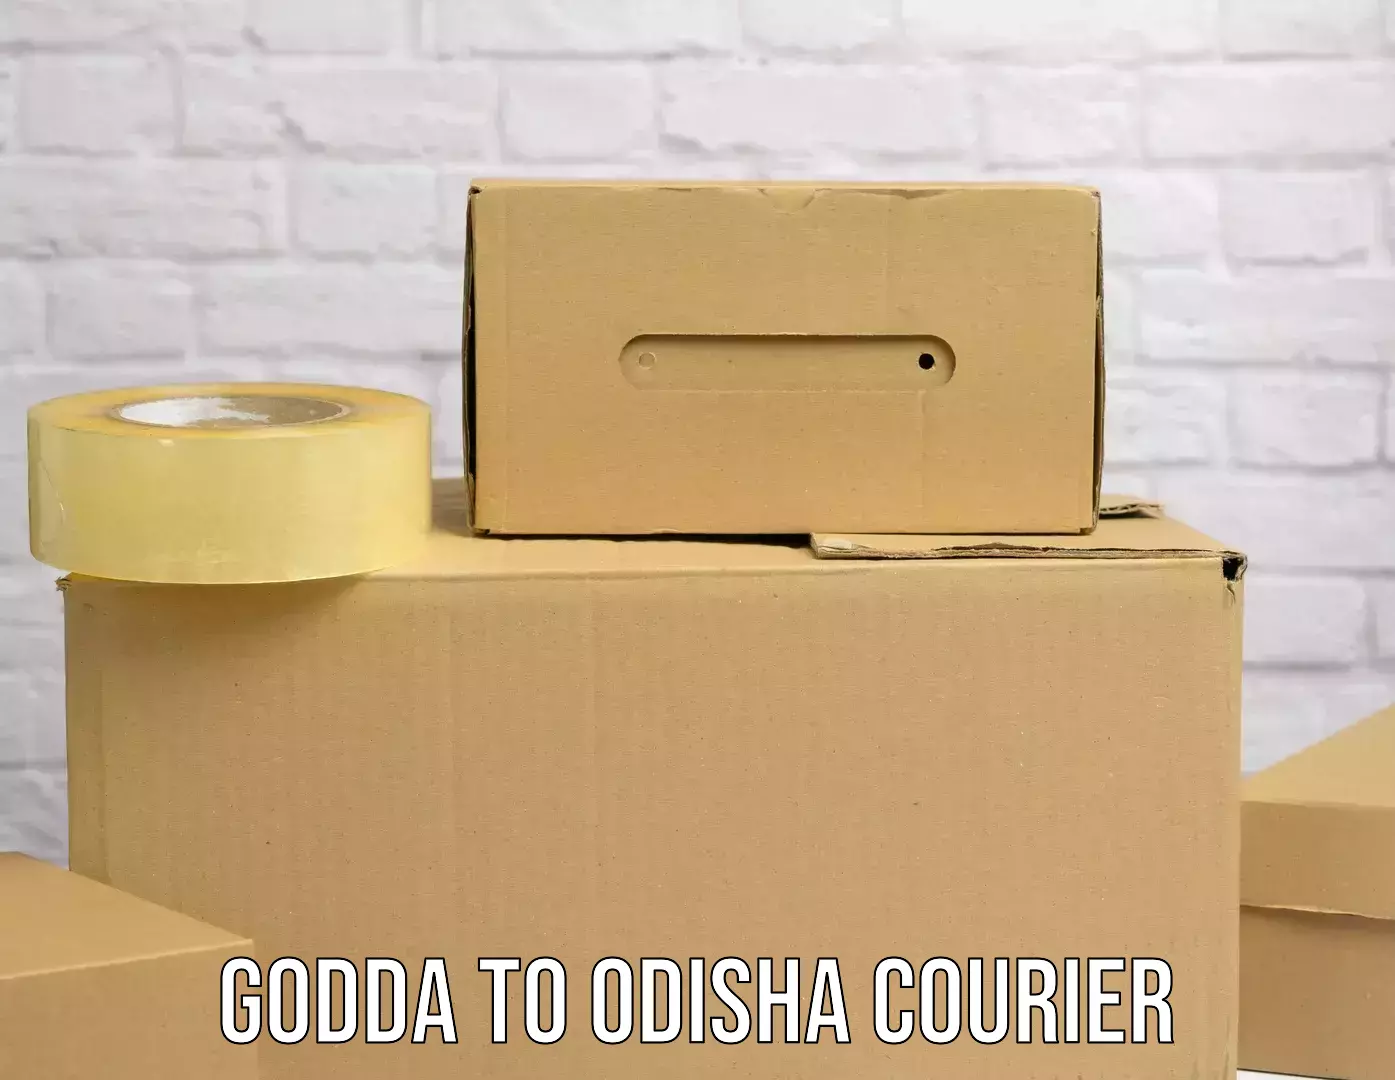 Supply chain delivery Godda to Bahalda